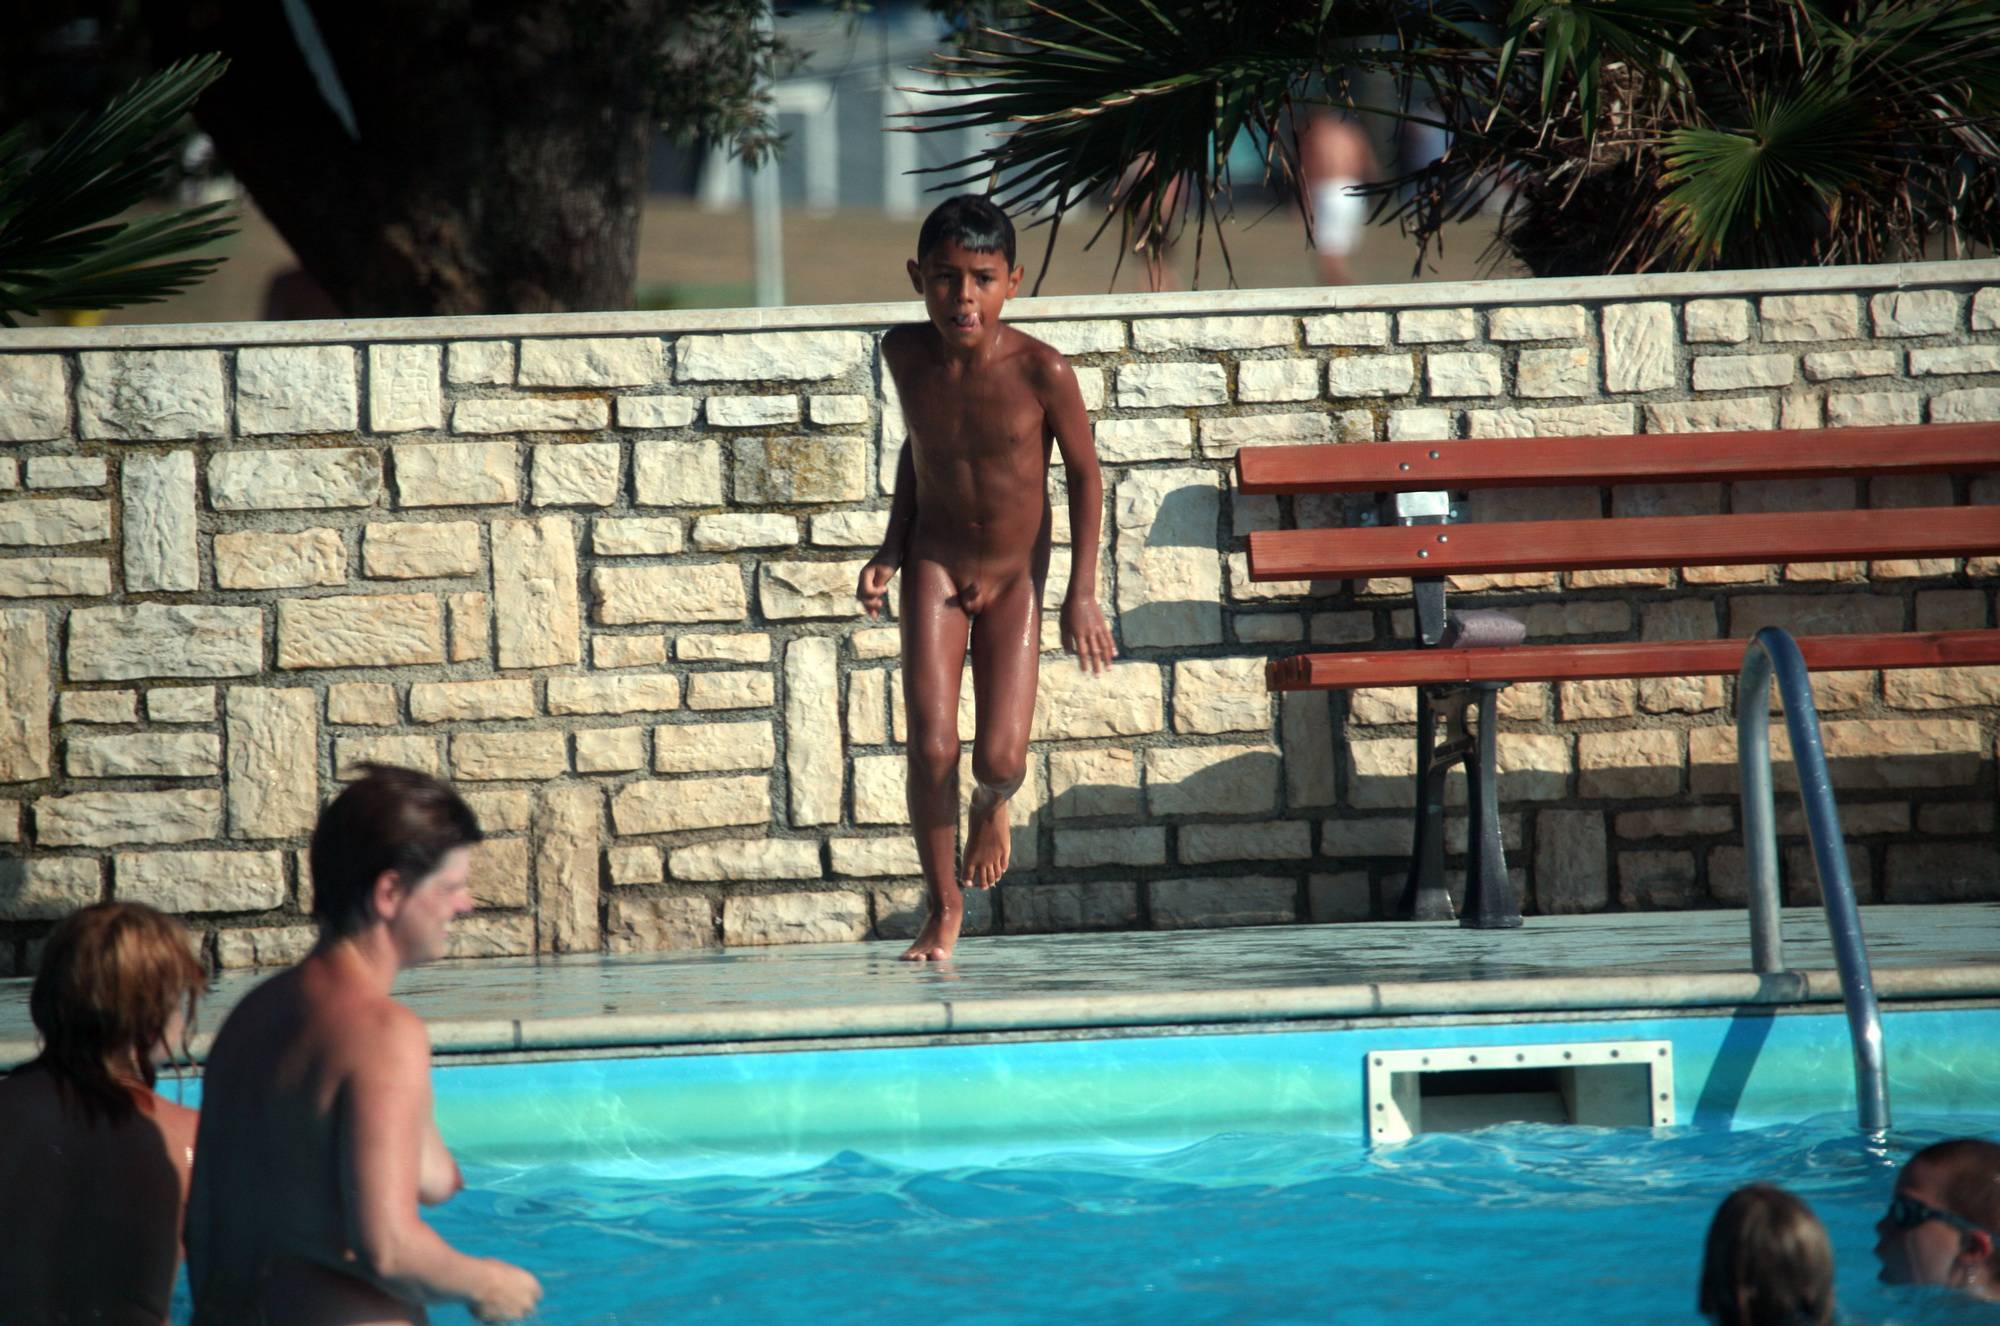 Purenudism Images-Nudist Pool Jumping Time - 2